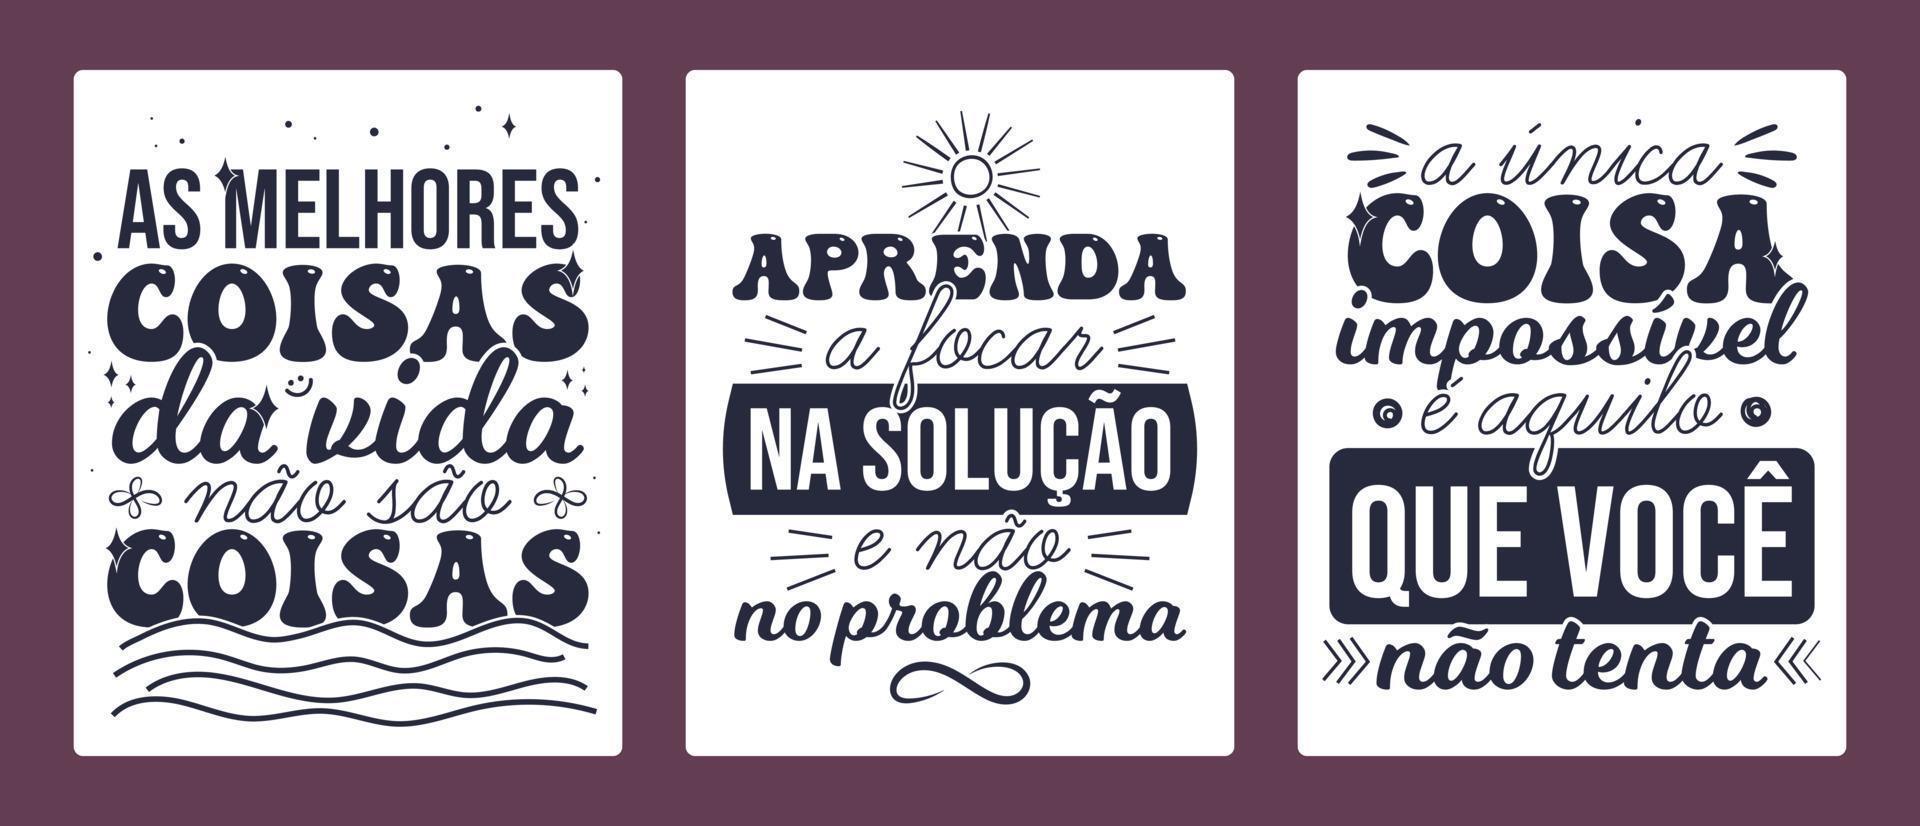 tre brasiliansk portugisiska affisch. översättning - de bäst saker i liv är inte saker. - lära sig till fokus på de lösning, inte de problem. - de endast sak omöjlig är Vad du do inte Prova. vektor